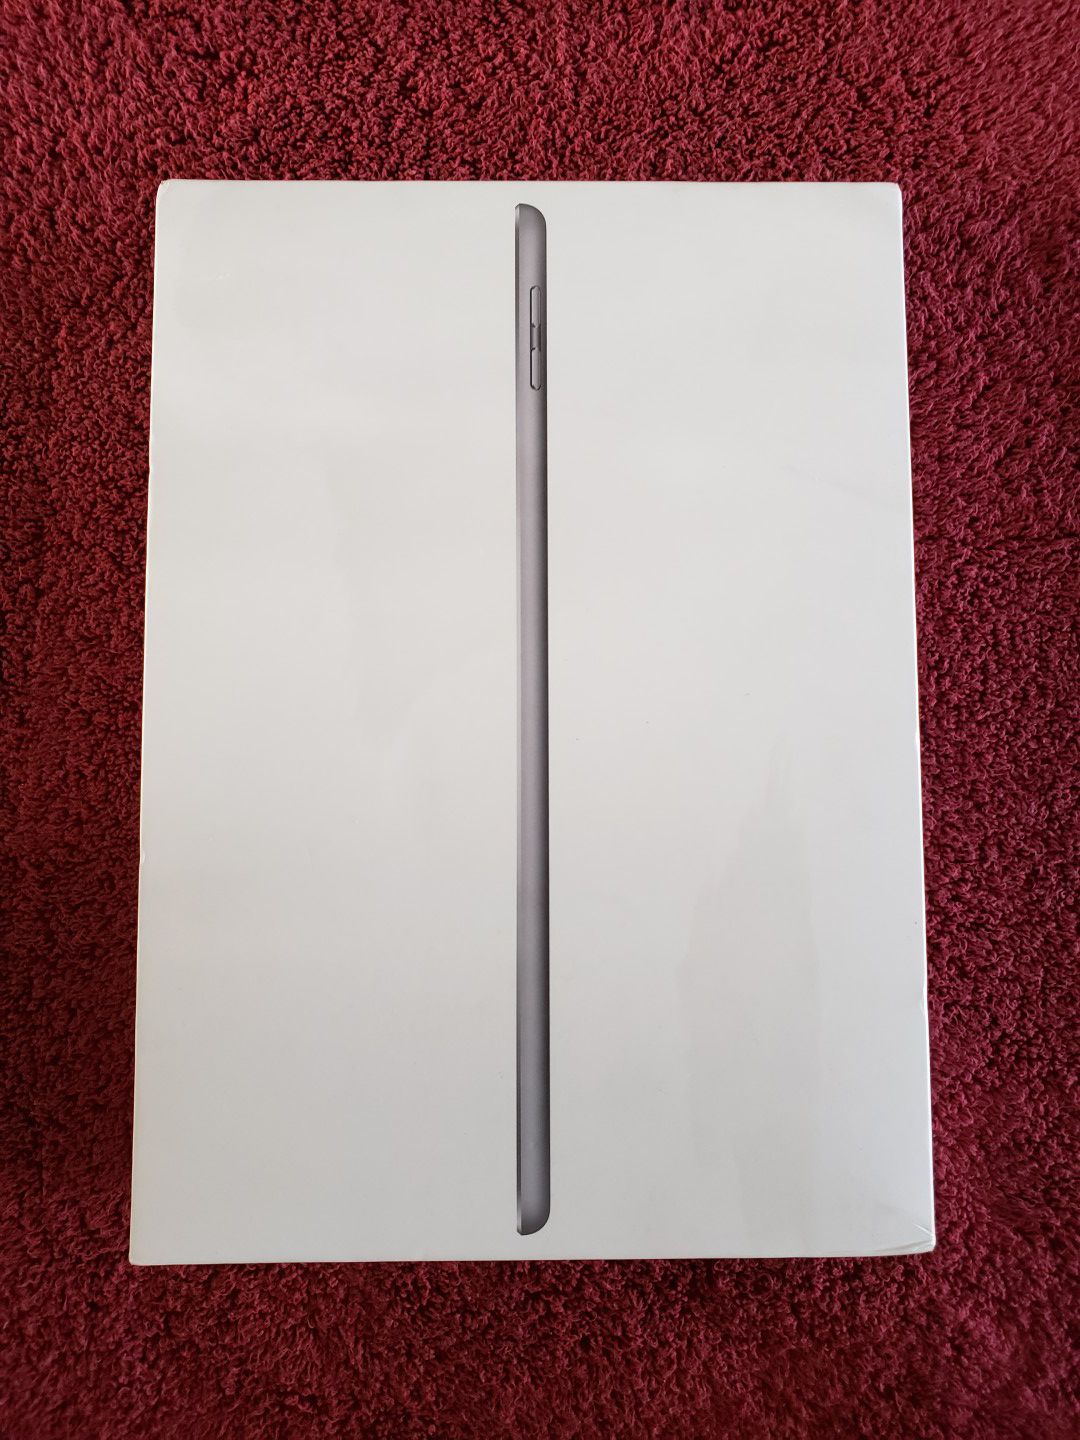 NEW iPad 6th Generation Wi-Fi 9.7" Tablet